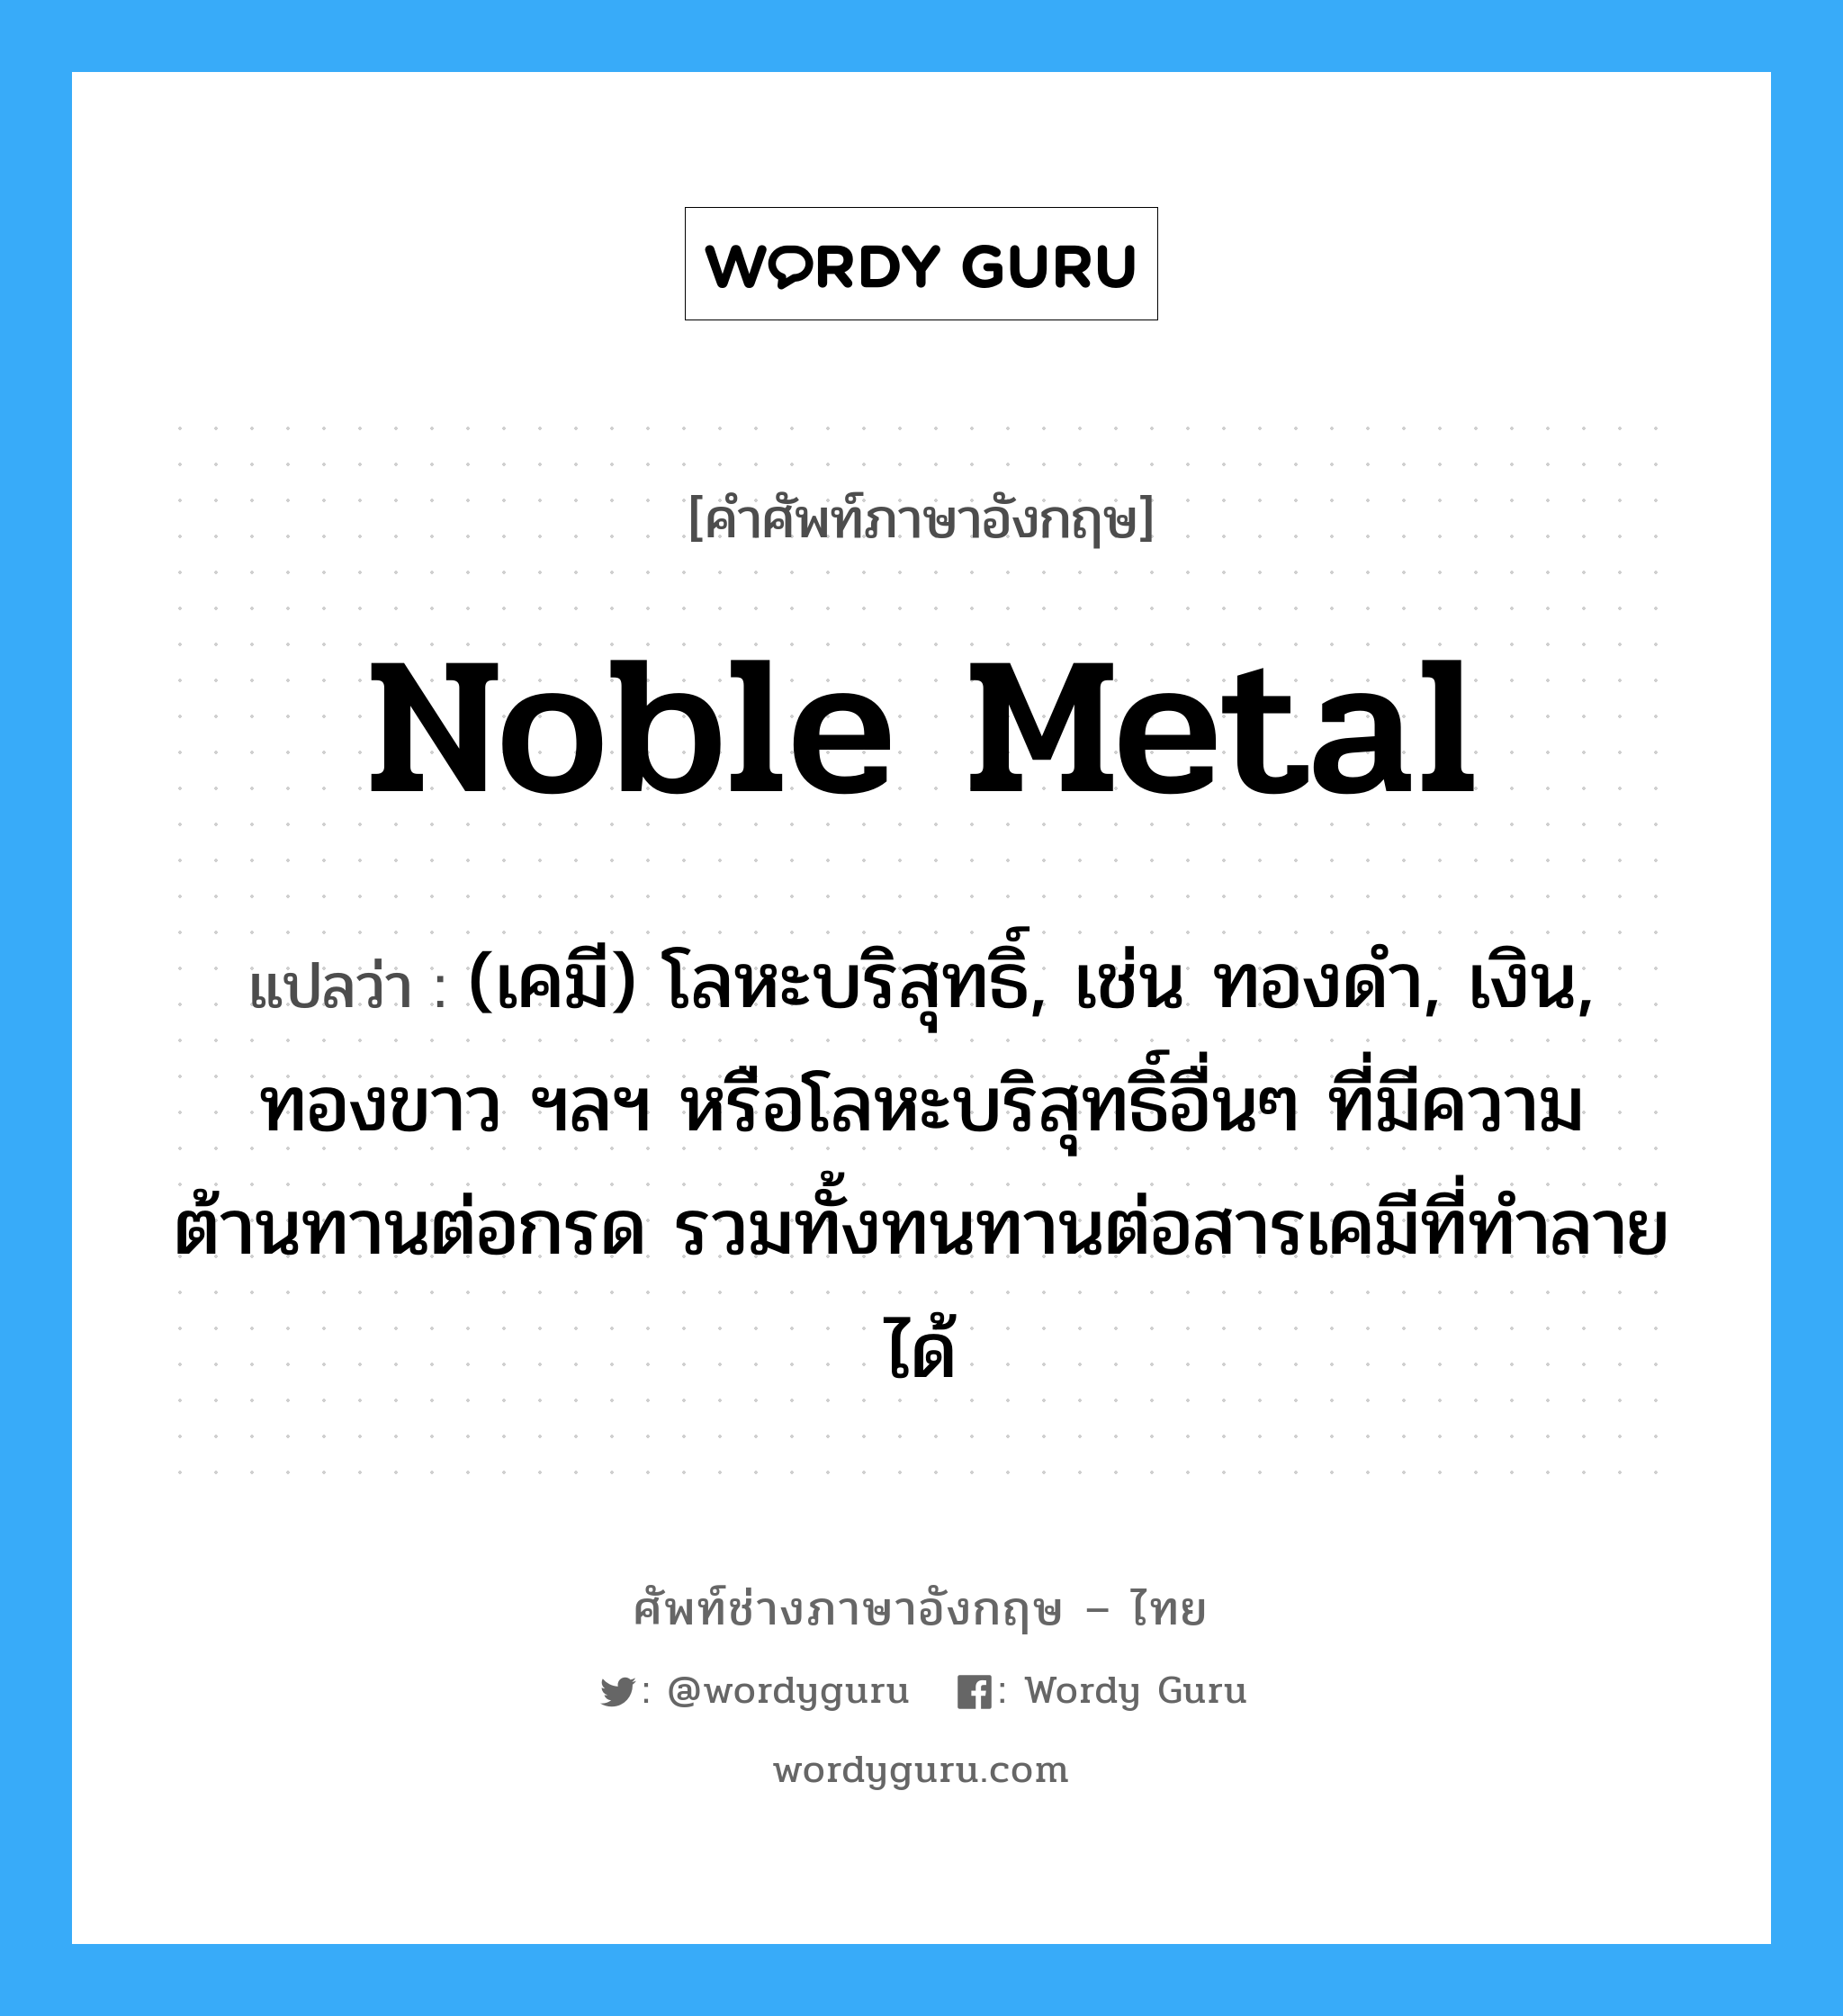 noble metal แปลว่า?, คำศัพท์ช่างภาษาอังกฤษ - ไทย noble metal คำศัพท์ภาษาอังกฤษ noble metal แปลว่า (เคมี) โลหะบริสุทธิ์, เช่น ทองดำ, เงิน, ทองขาว ฯลฯ หรือโลหะบริสุทธิ์อื่นๆ ที่มีความต้านทานต่อกรด รวมทั้งทนทานต่อสารเคมีที่ทำลายได้